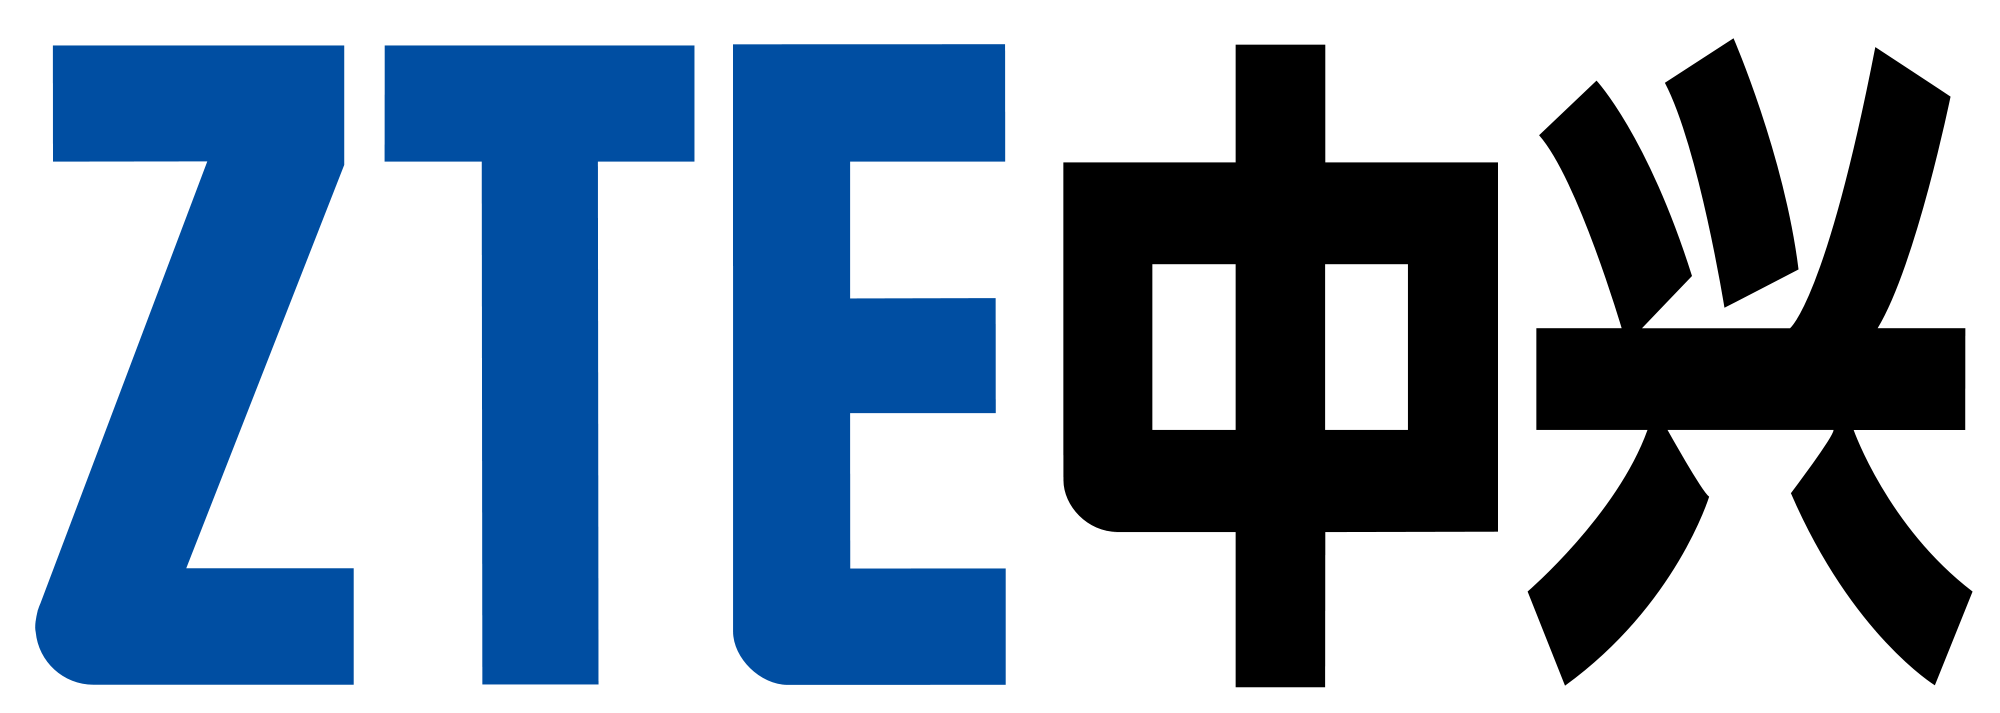 ZTE Corporation Logo - ZTE logo.svg